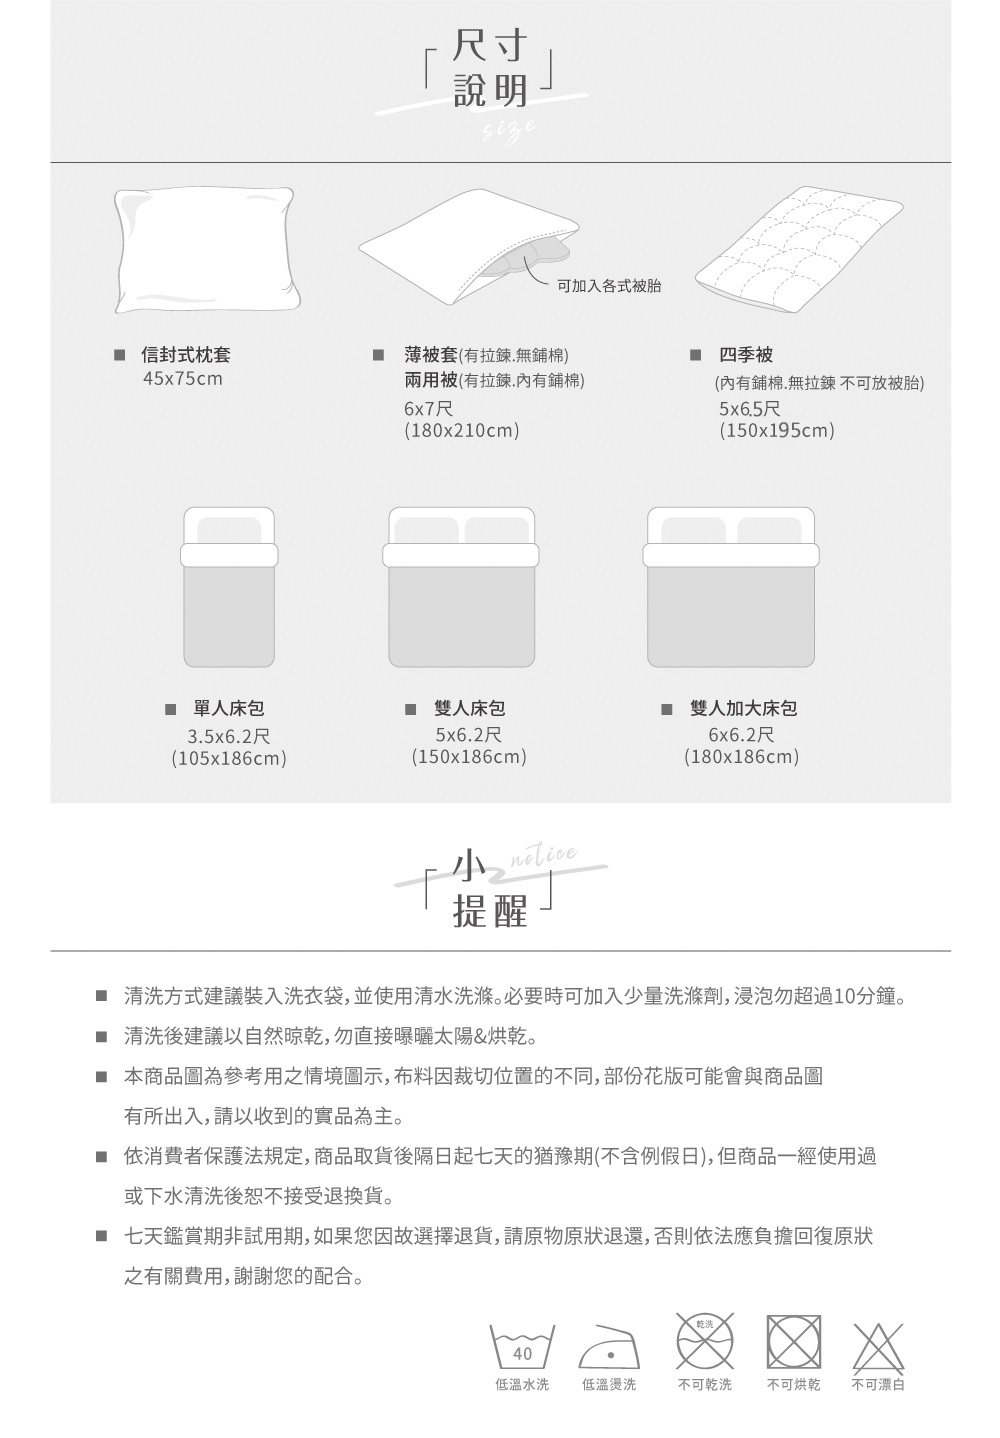 台灣製天絲兩用被床包四件組 雙人床包 多款可選